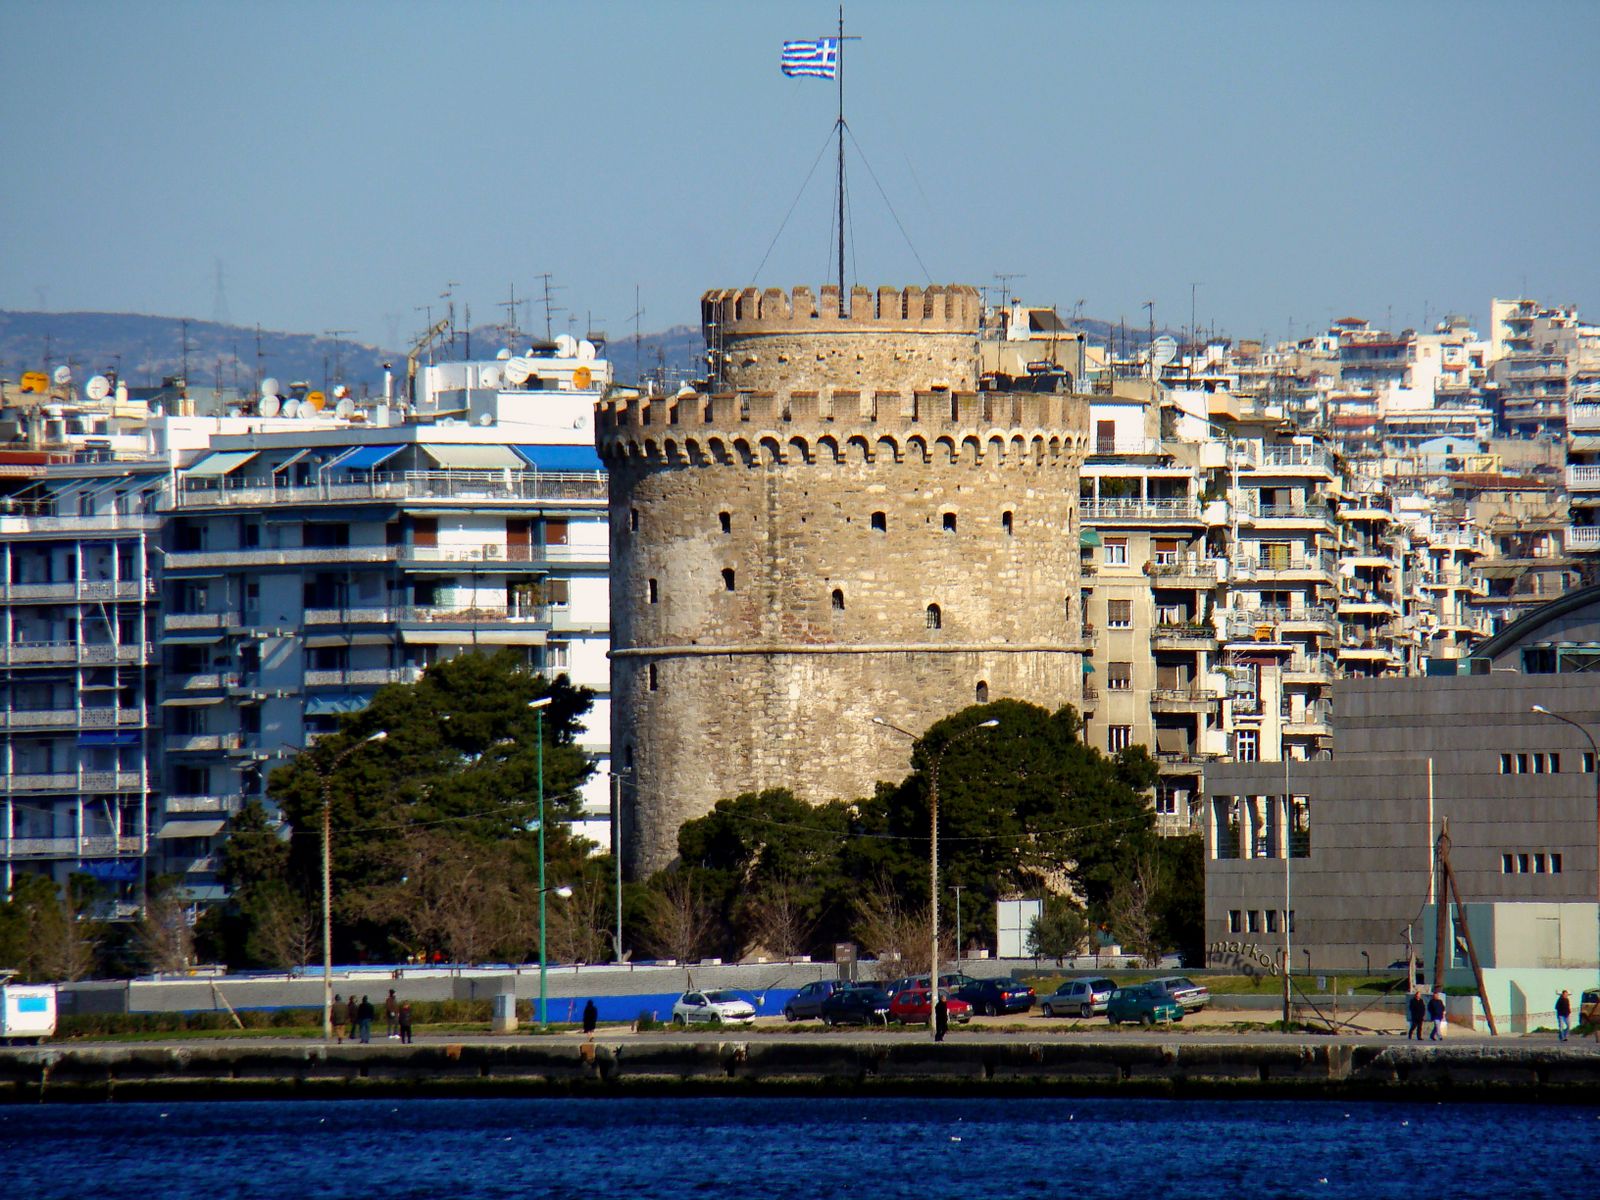 Δωρεάν εξετάσεις στη Θεσσαλονίκη